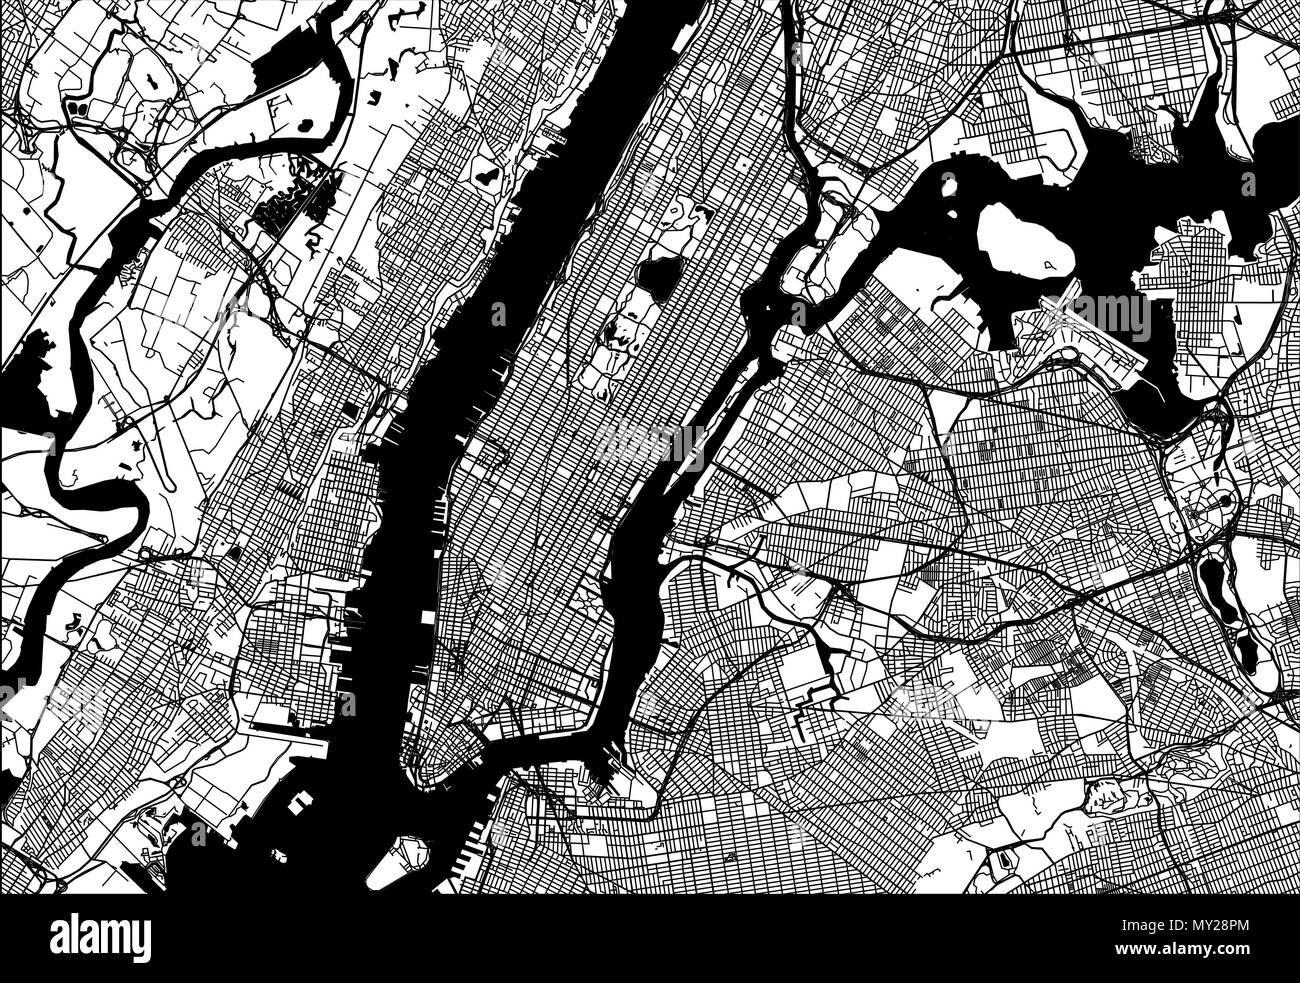 Mapa de Manhattan con partes del Bronx y de Brooklyn, Queens, Jersey City. Muy detallado de la versión sin puentes y nombres. Ilustración del Vector